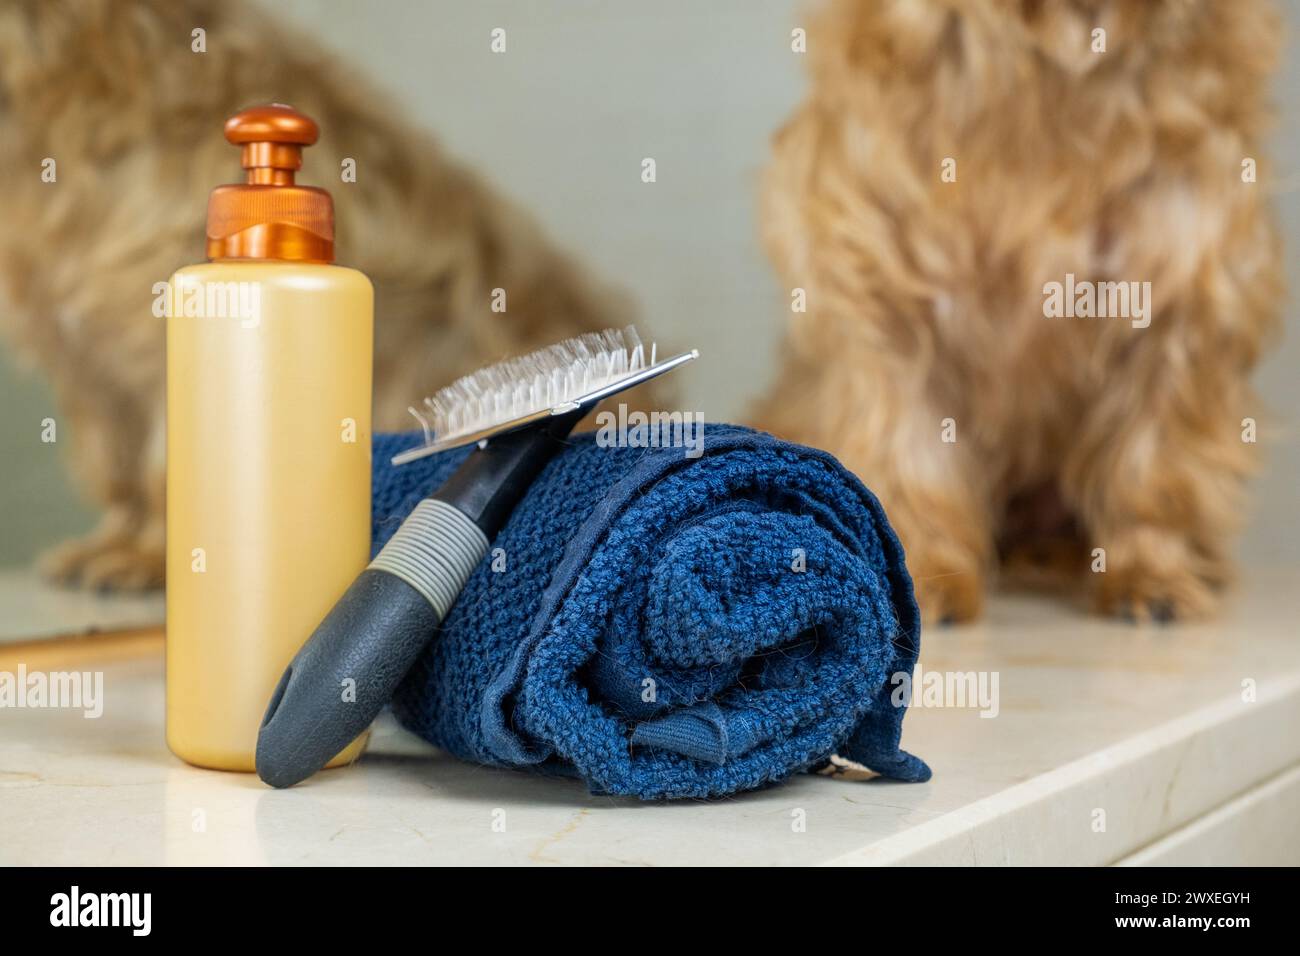 détail du kit de toilettage pour chien avec un petit chien brun clair hors foyer en arrière-plan. Il y a une serviette, shampooing et brosse pour une hygiène correcte et voiture Banque D'Images